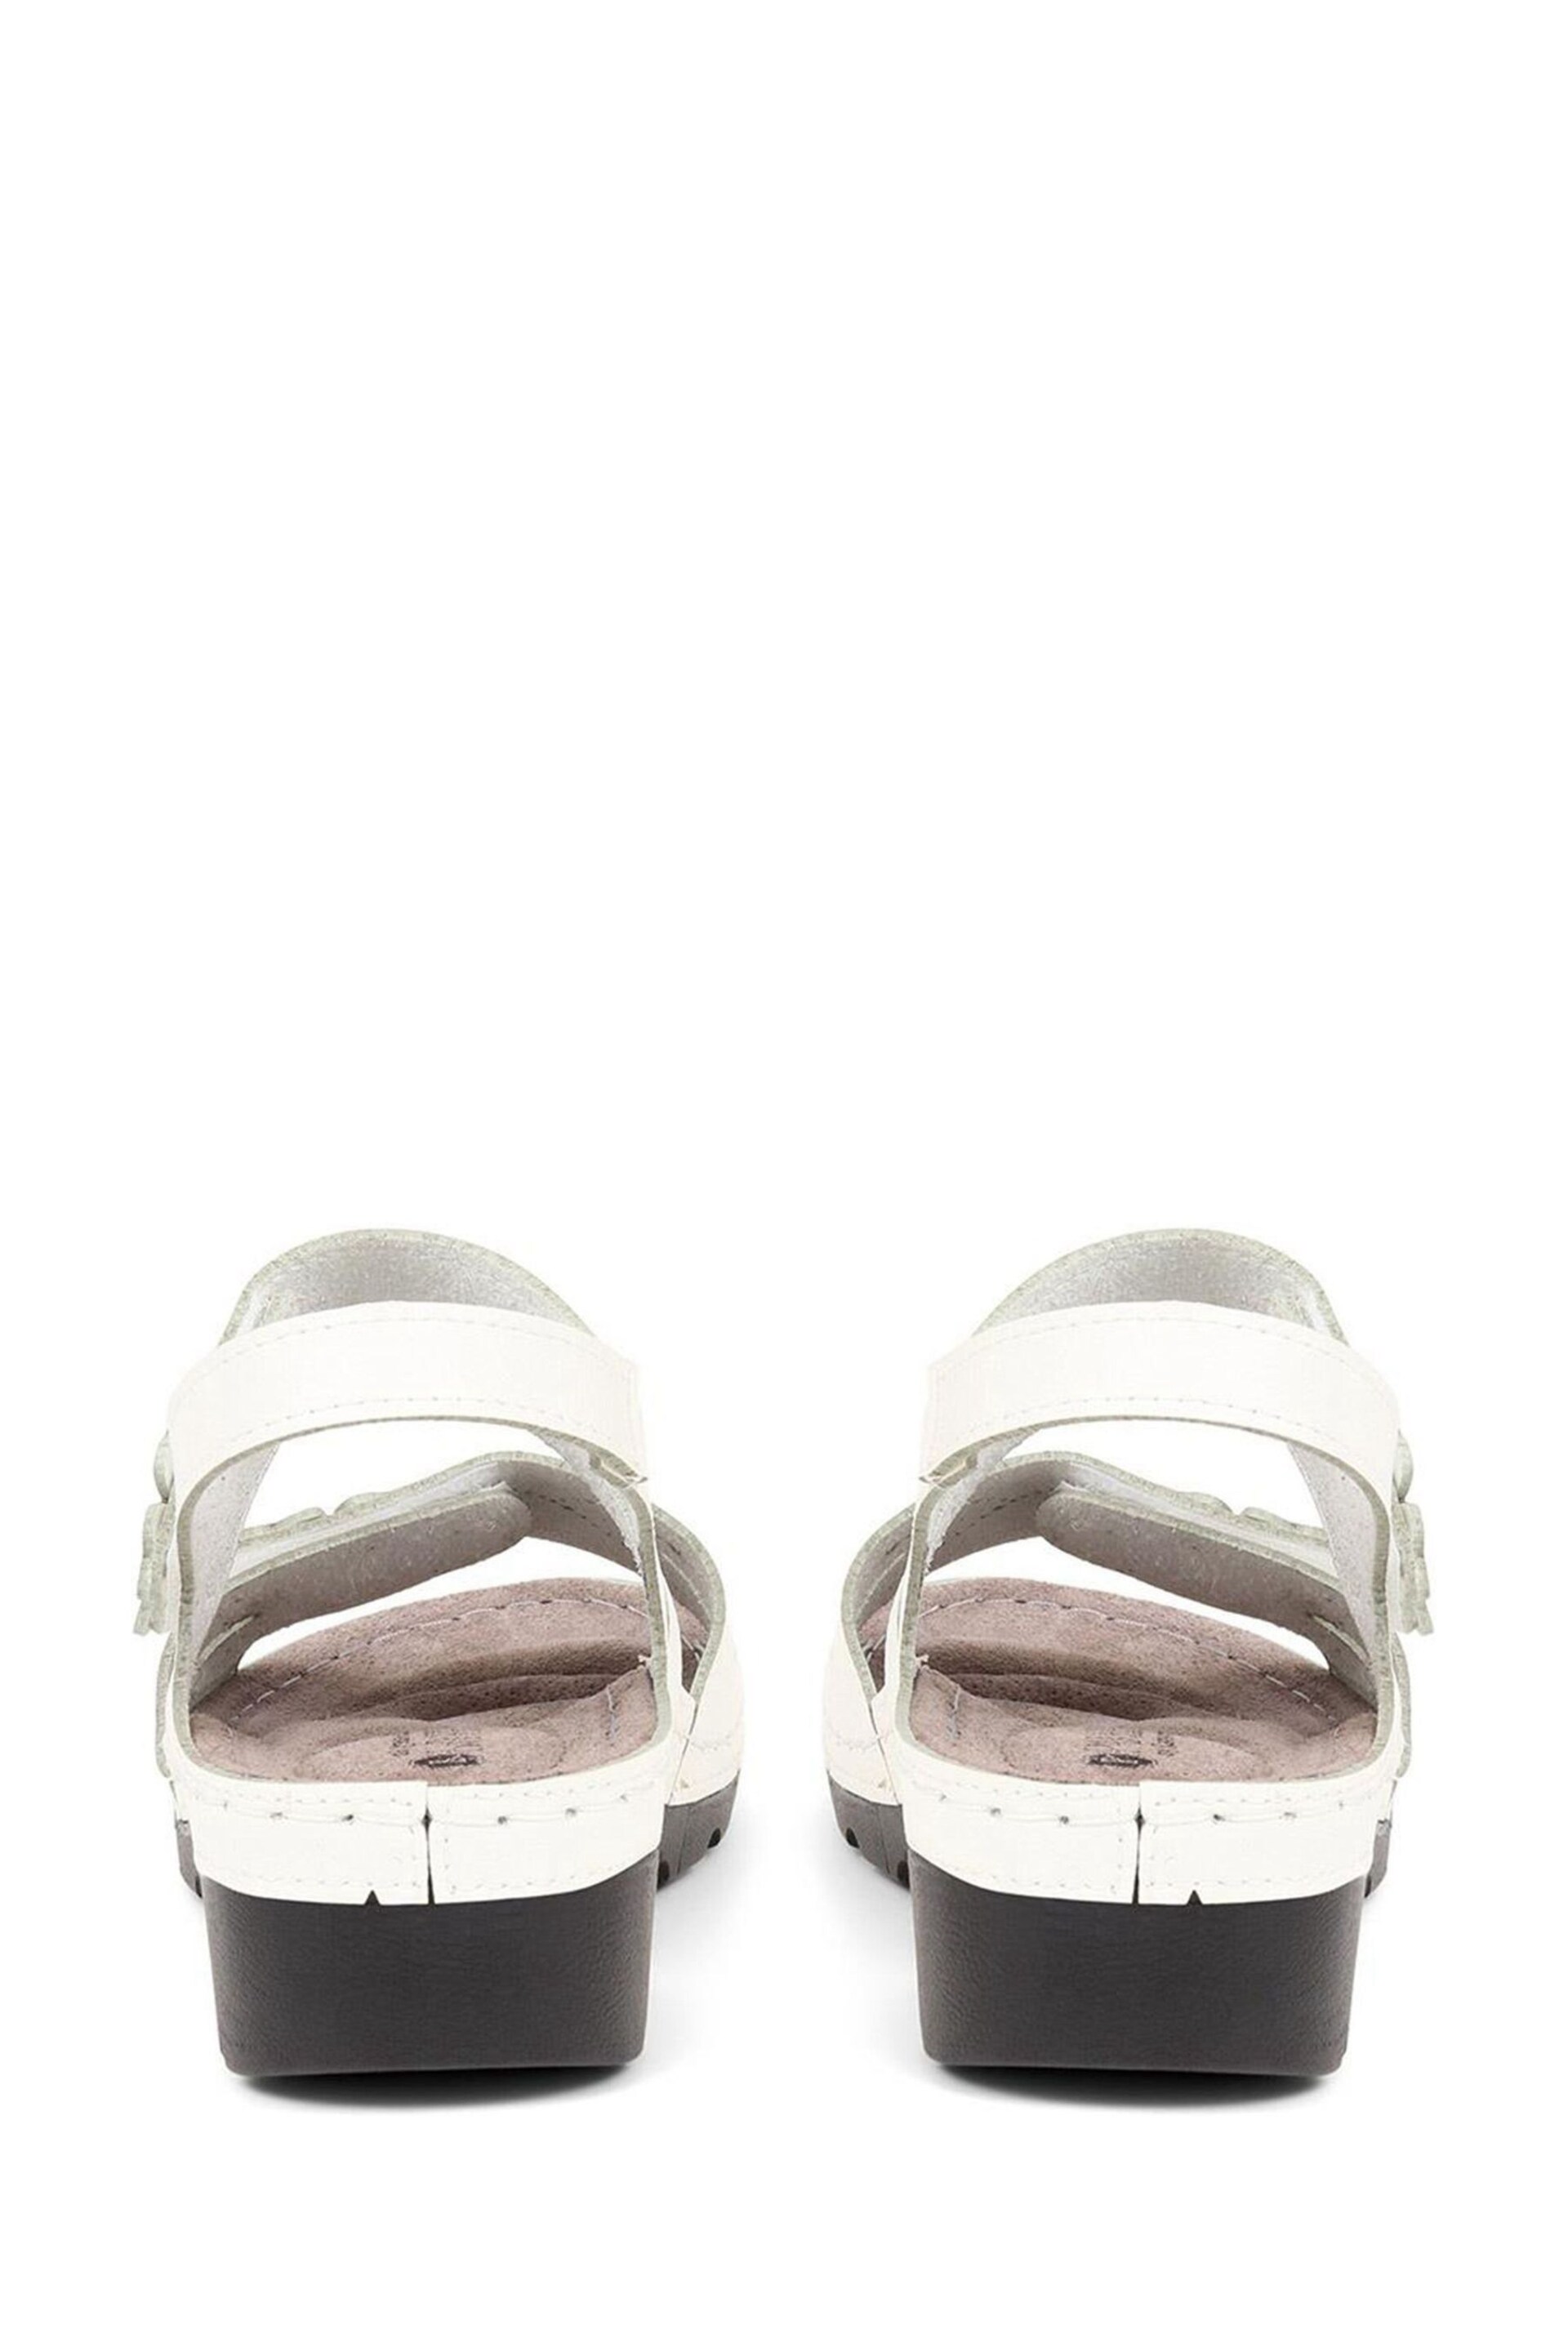 Pavers Adjustable Embellished White Sandals - Image 3 of 5